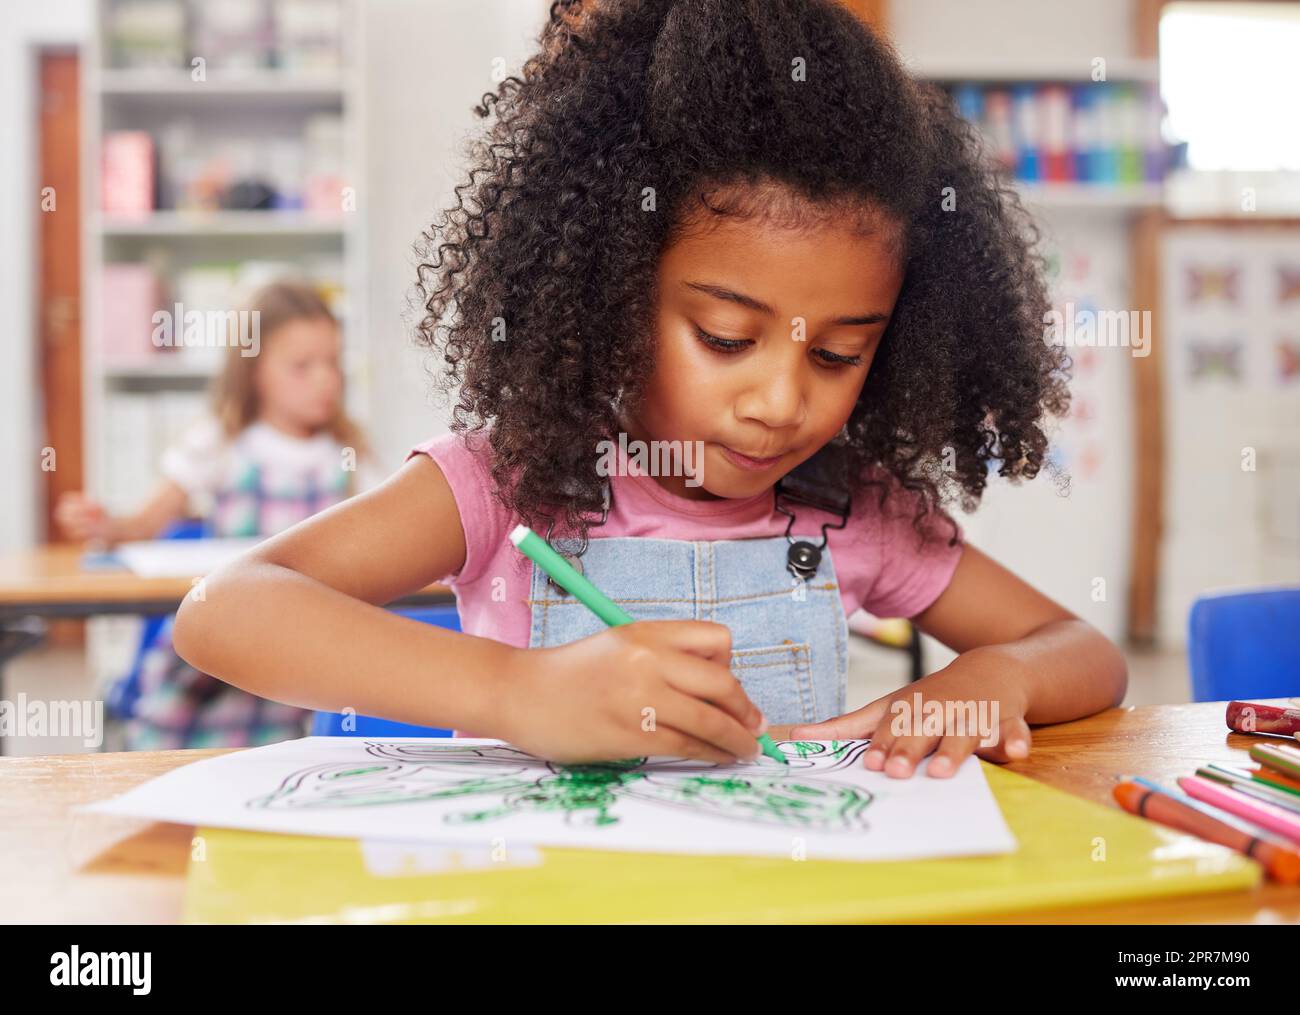 La coordinazione mano-occhio e la presa a matita aggiungono le abilità di scrittura. Una colorazione preschooler nella classe. Foto Stock